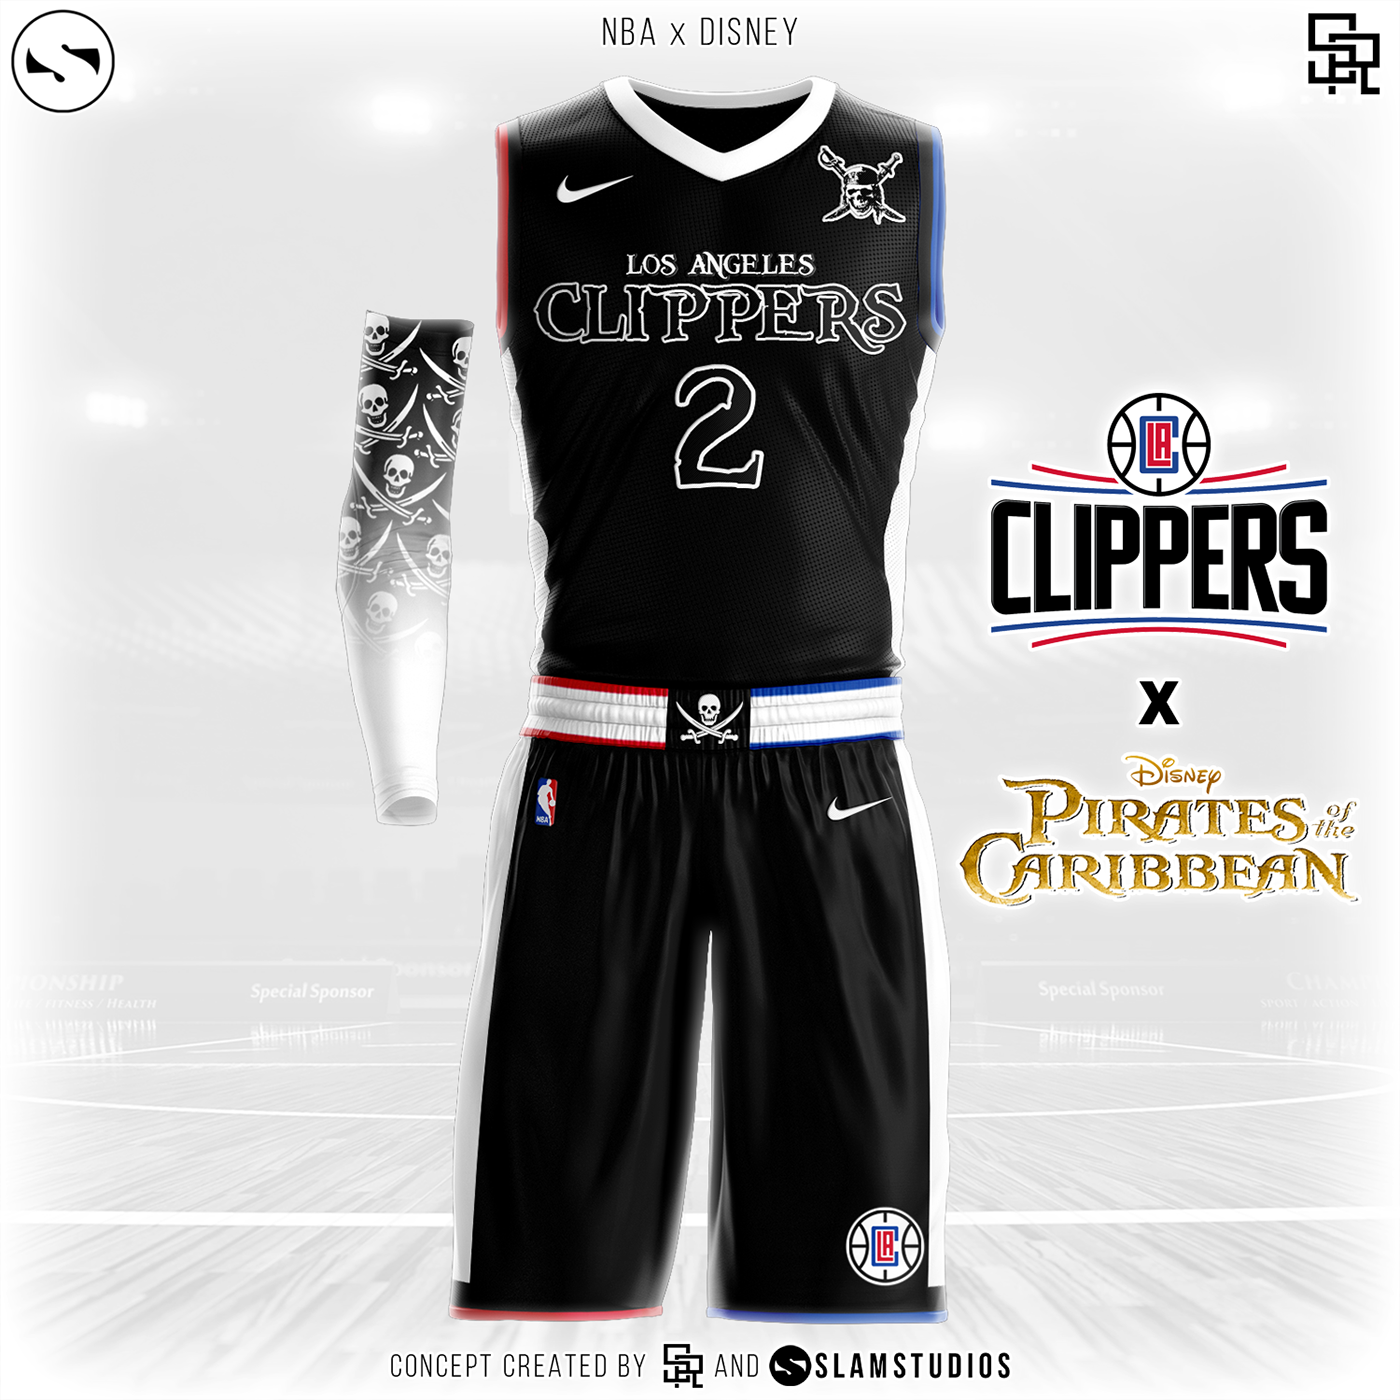 basketball jersey disney disney world jersey Jersey concept NBA nba jersey uniform